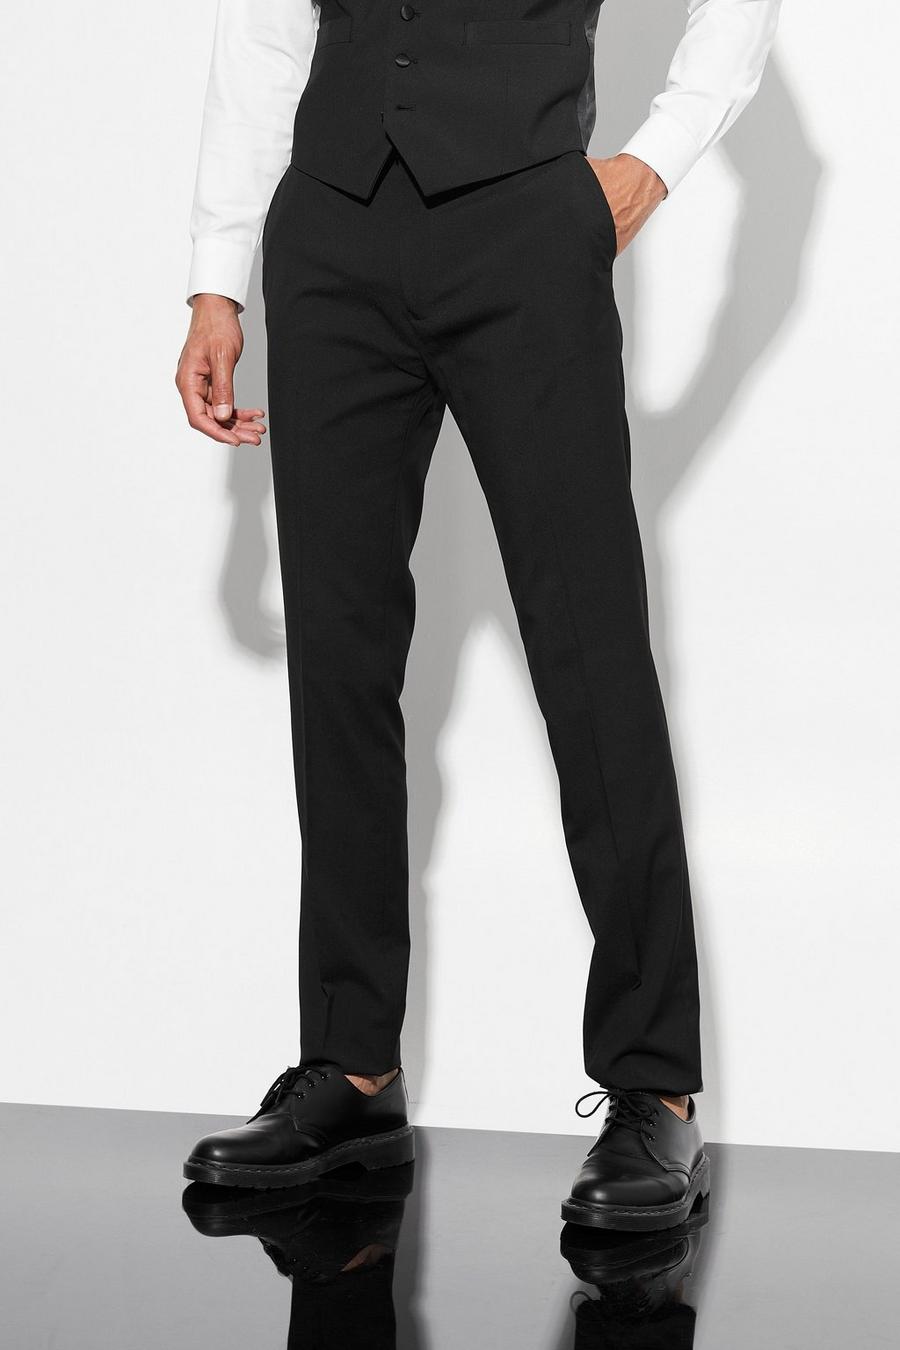 שחור nero מכנסי חליפת טוקסידו סקיני, לגברים גבוהים